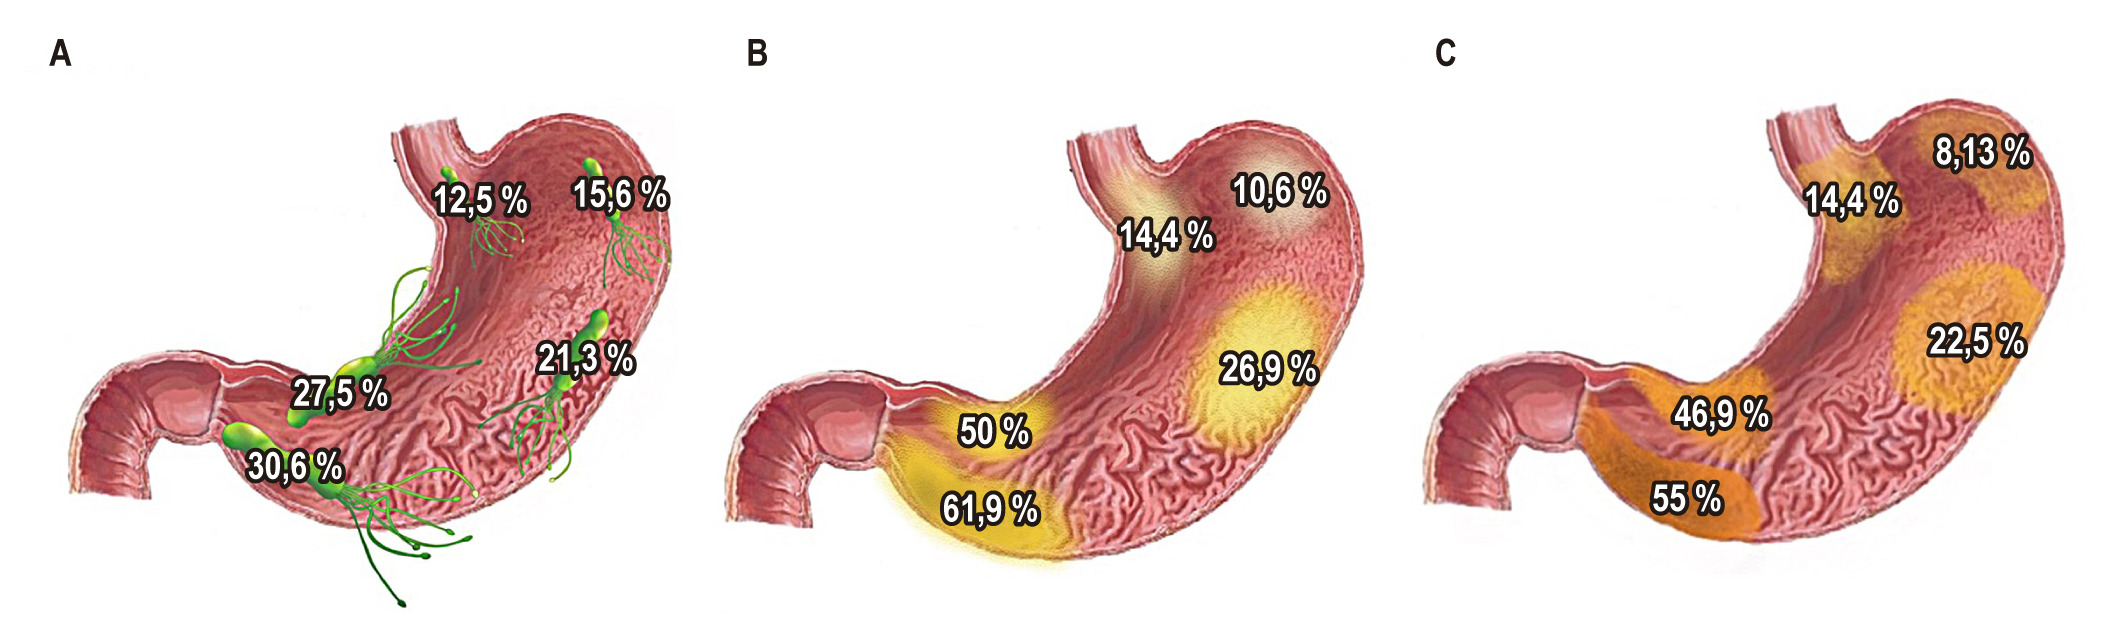 Figura 1. Prevalencia y distribución de H. pylori (A), atrofia (B), metaplasia intestinal (C) en pacientes con diagnóstico previo de condiciones preneoplásicas en Colombia